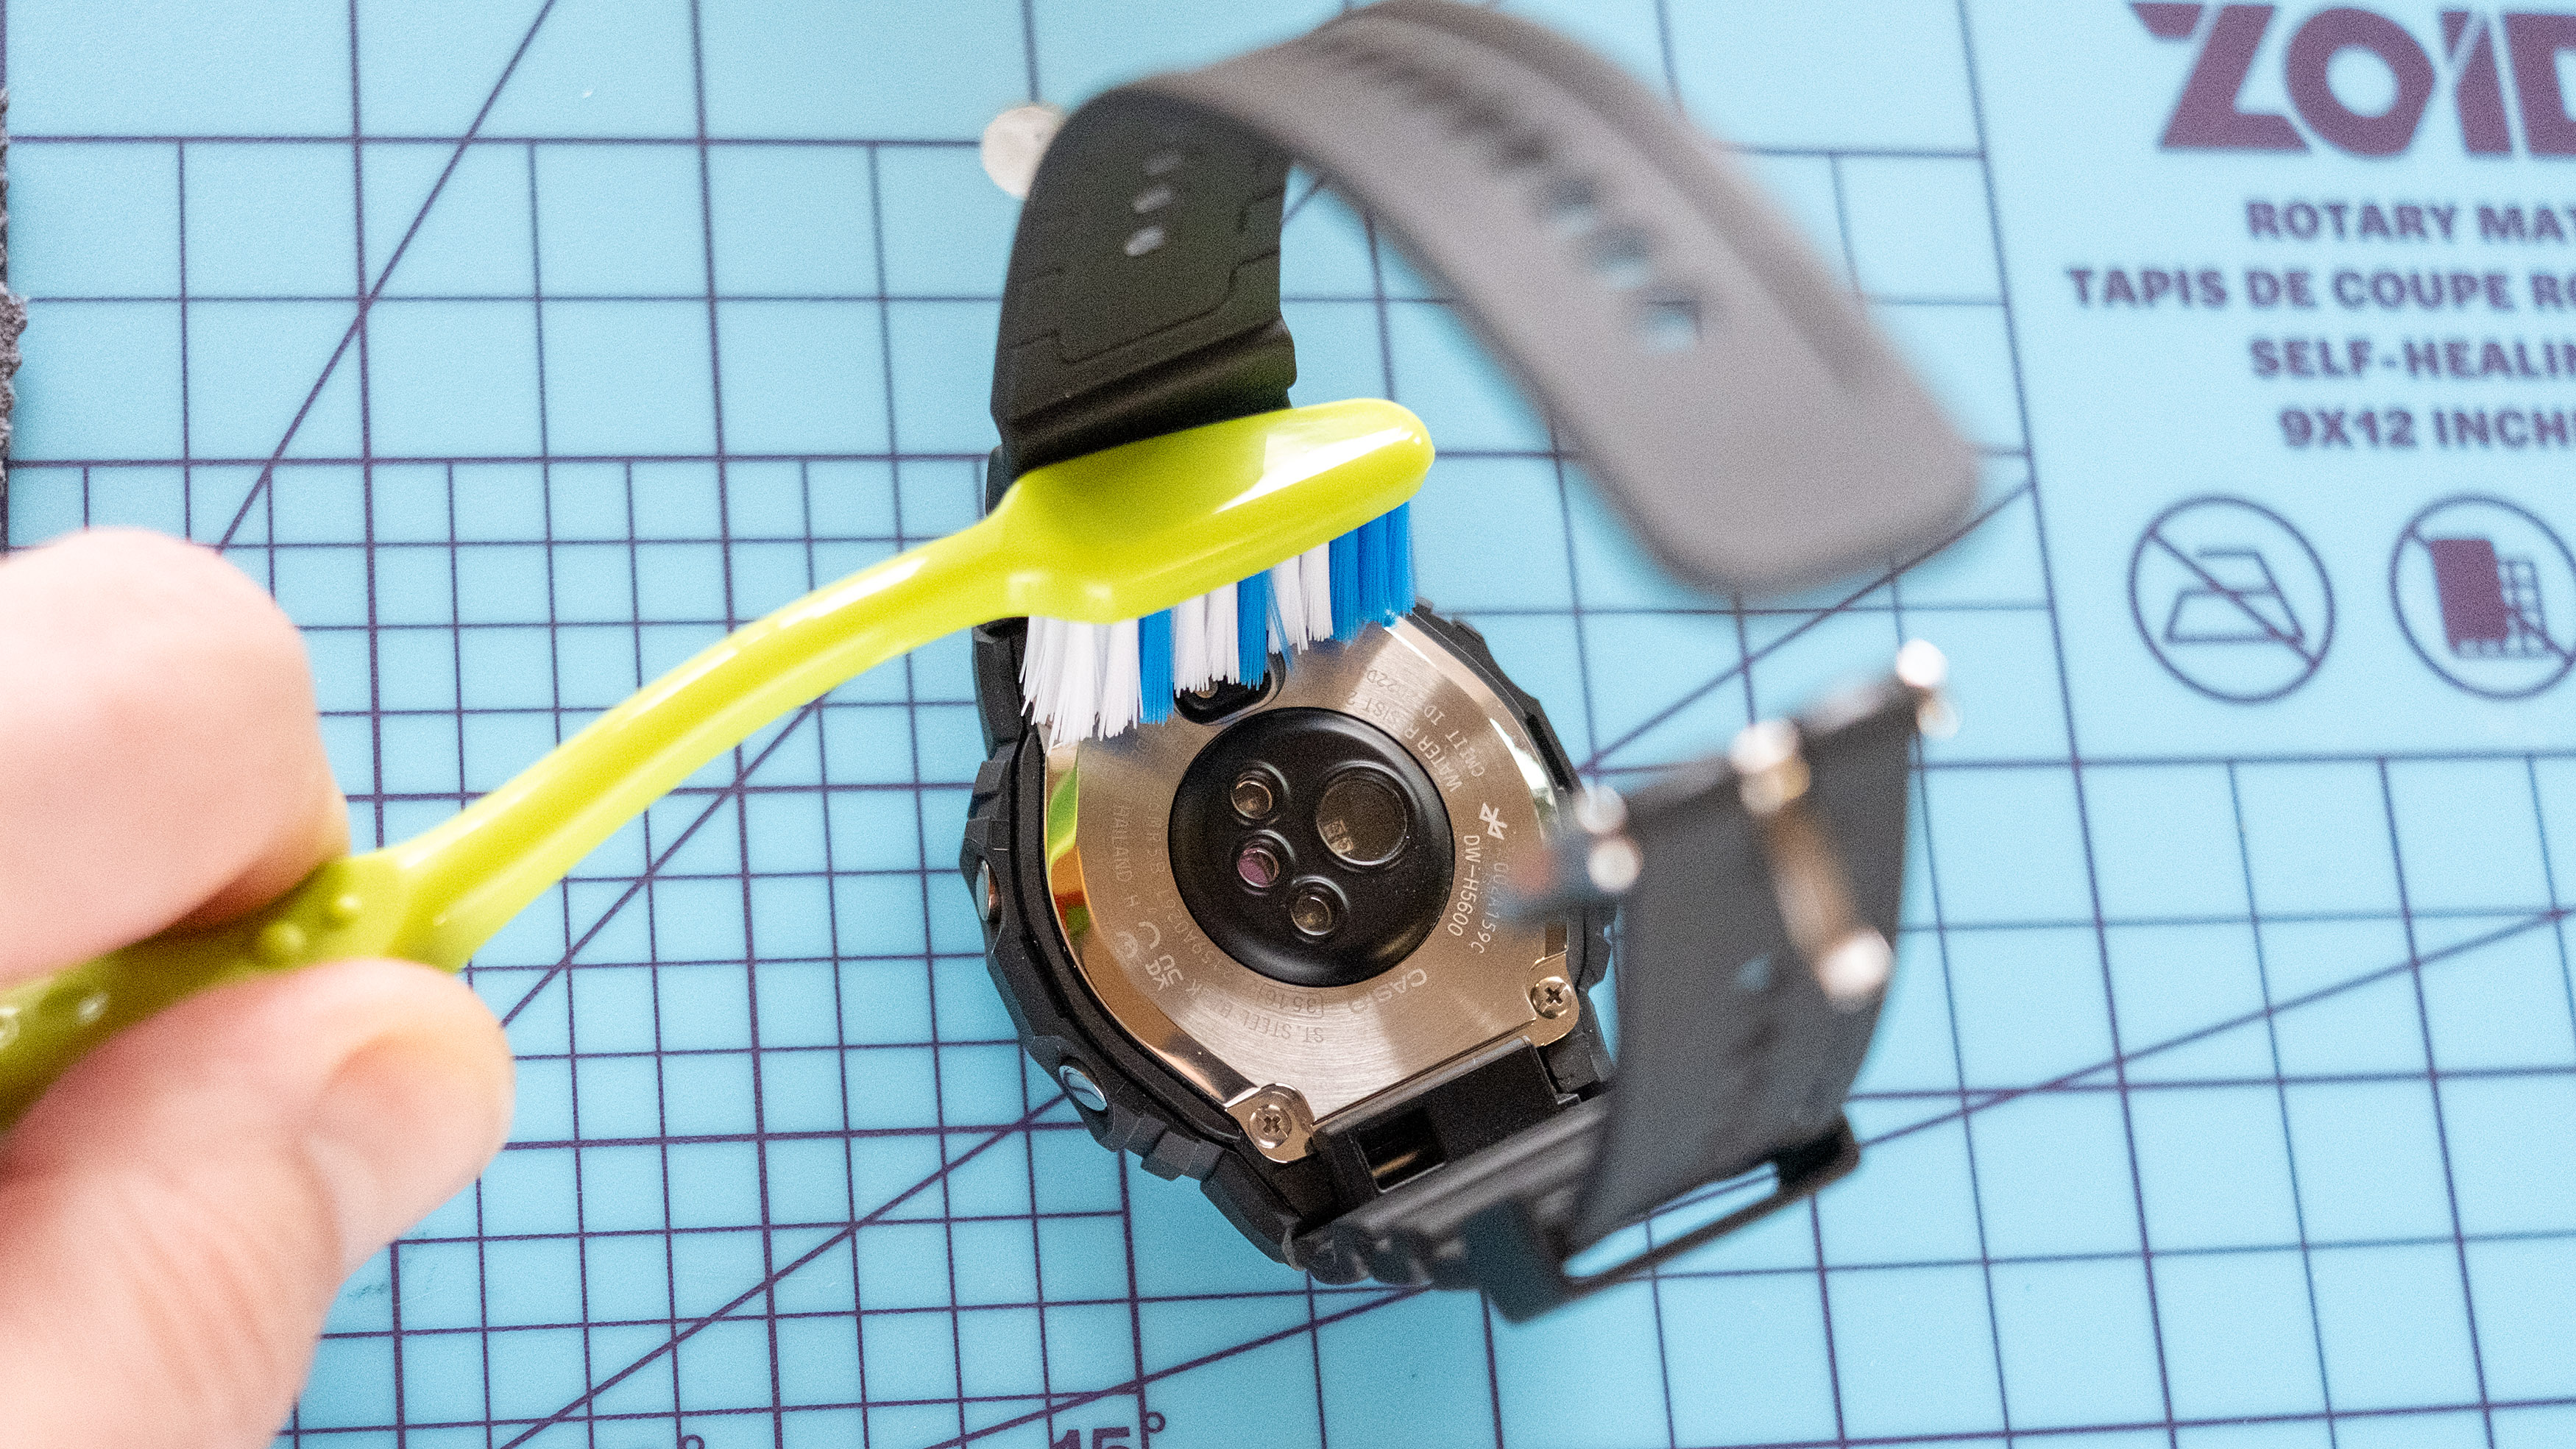 فرك الجزء الخلفي من ساعة اللياقة البدنية G-Shock باستخدام فرشاة أسنان.